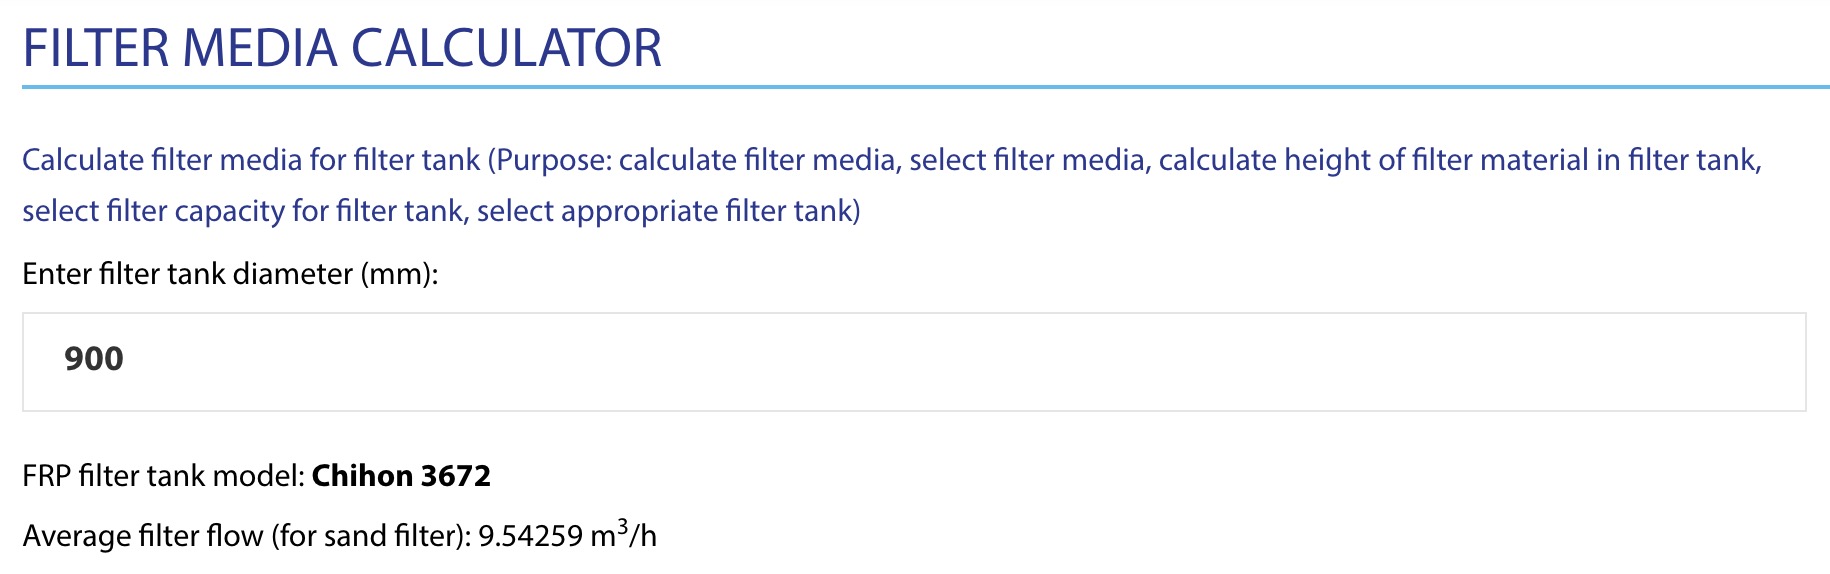 Filter media calculator -3